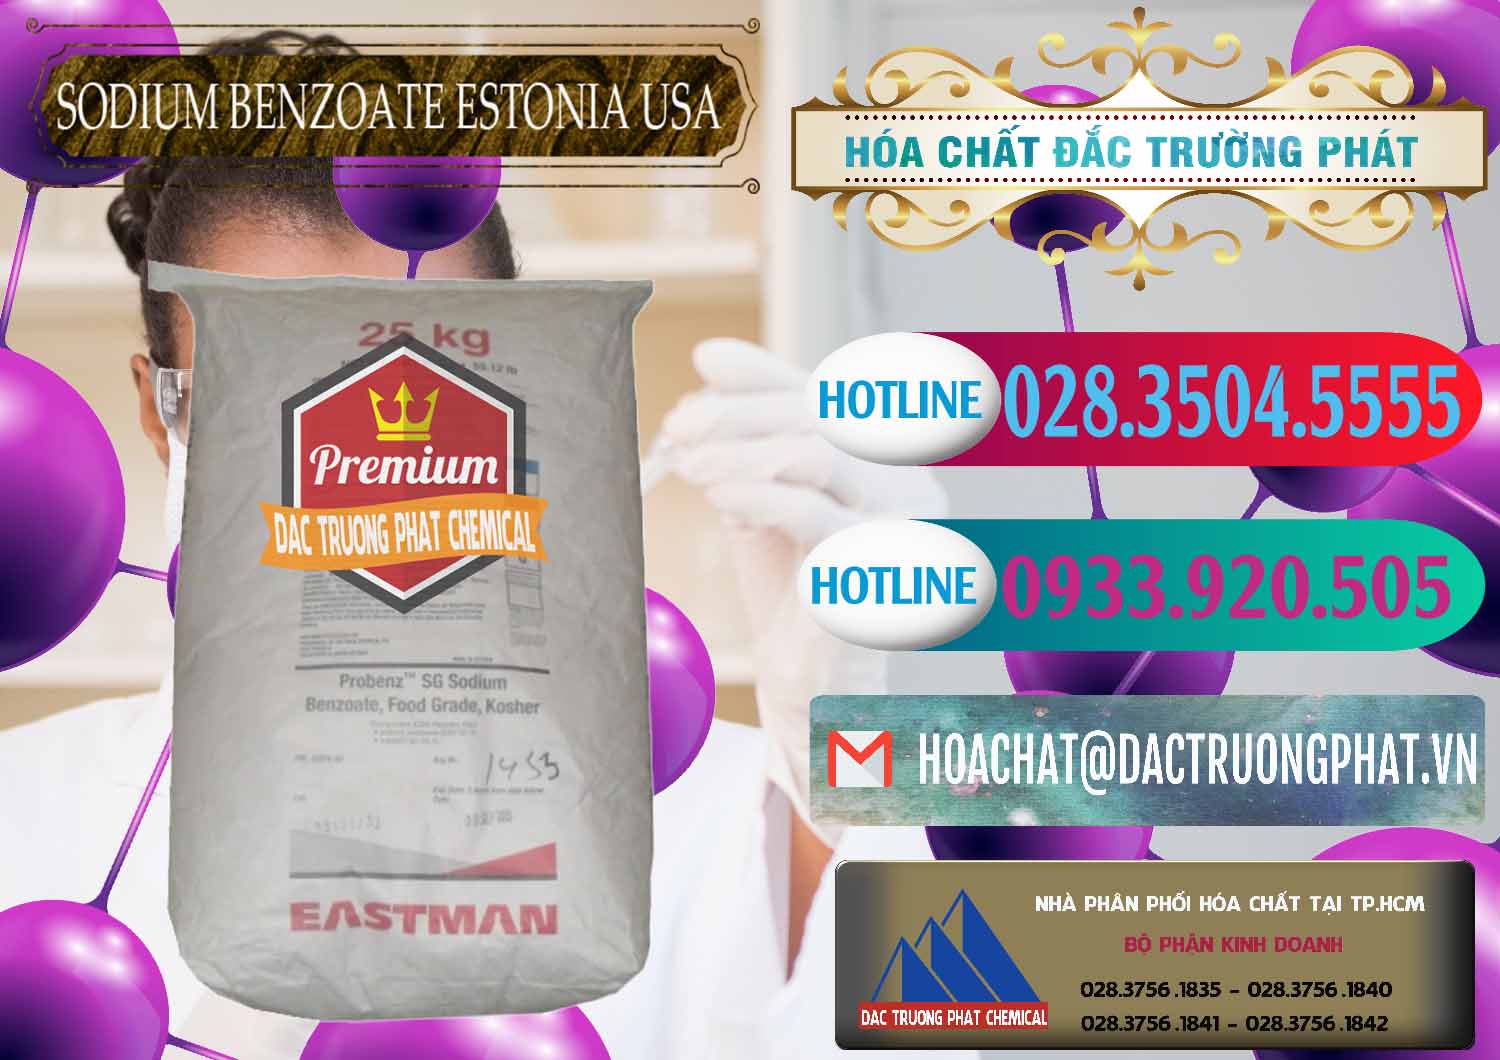 Cty chuyên cung cấp & bán Sodium Benzoate - Mốc Bột Estonia Mỹ USA - 0468 - Công ty phân phối & cung cấp hóa chất tại TP.HCM - truongphat.vn